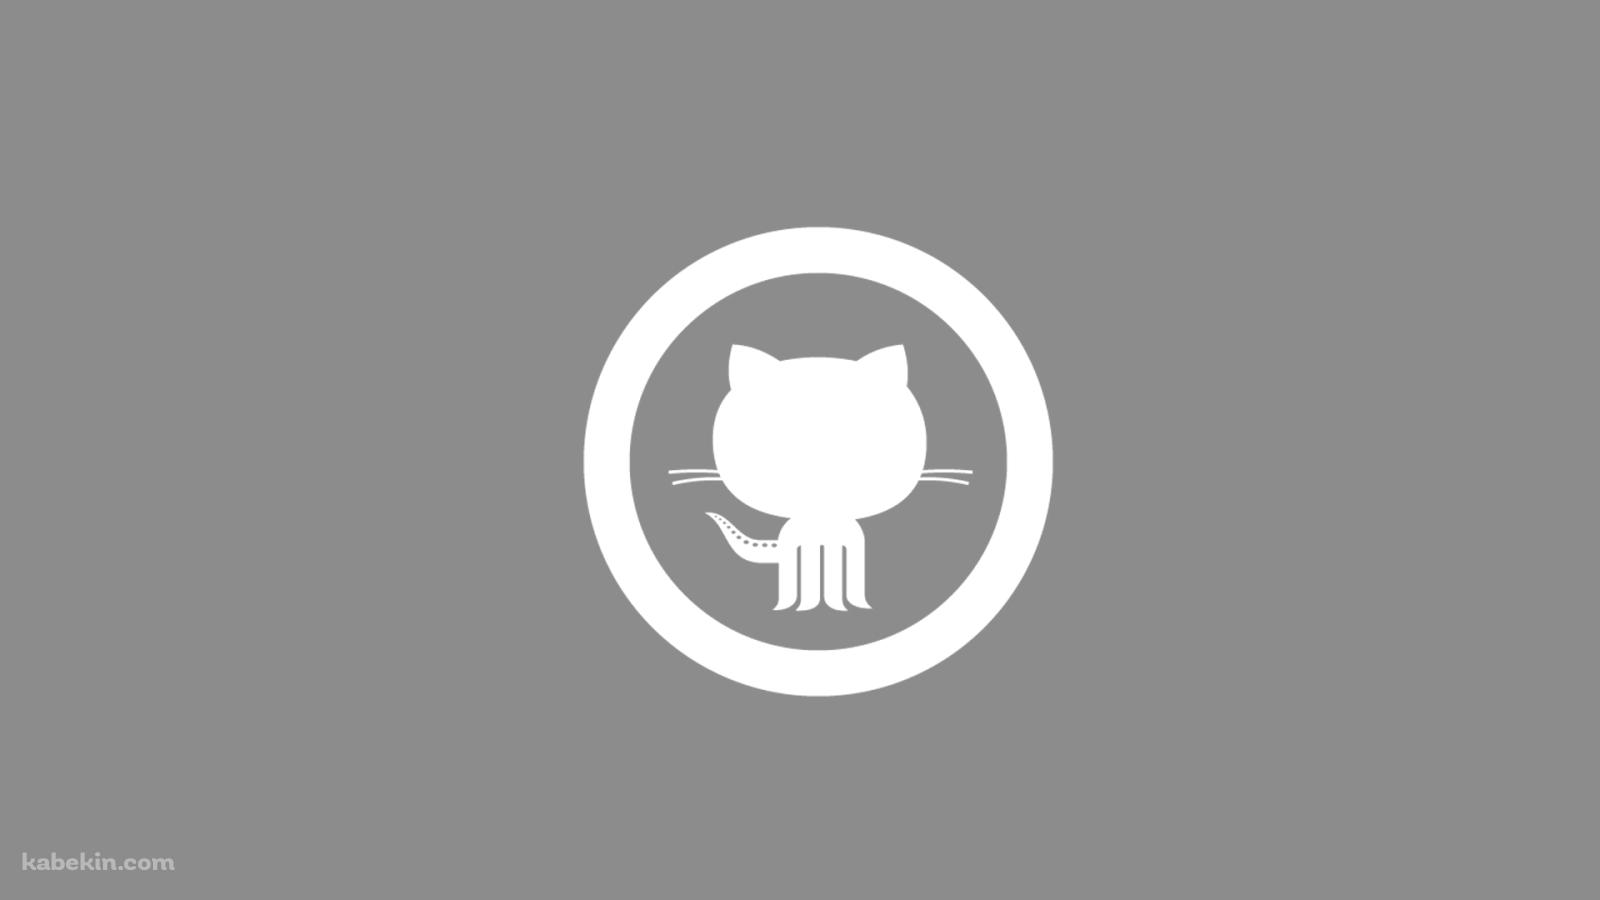 GitHubのロゴの壁紙(1600px x 900px) 高画質 PC・デスクトップ用